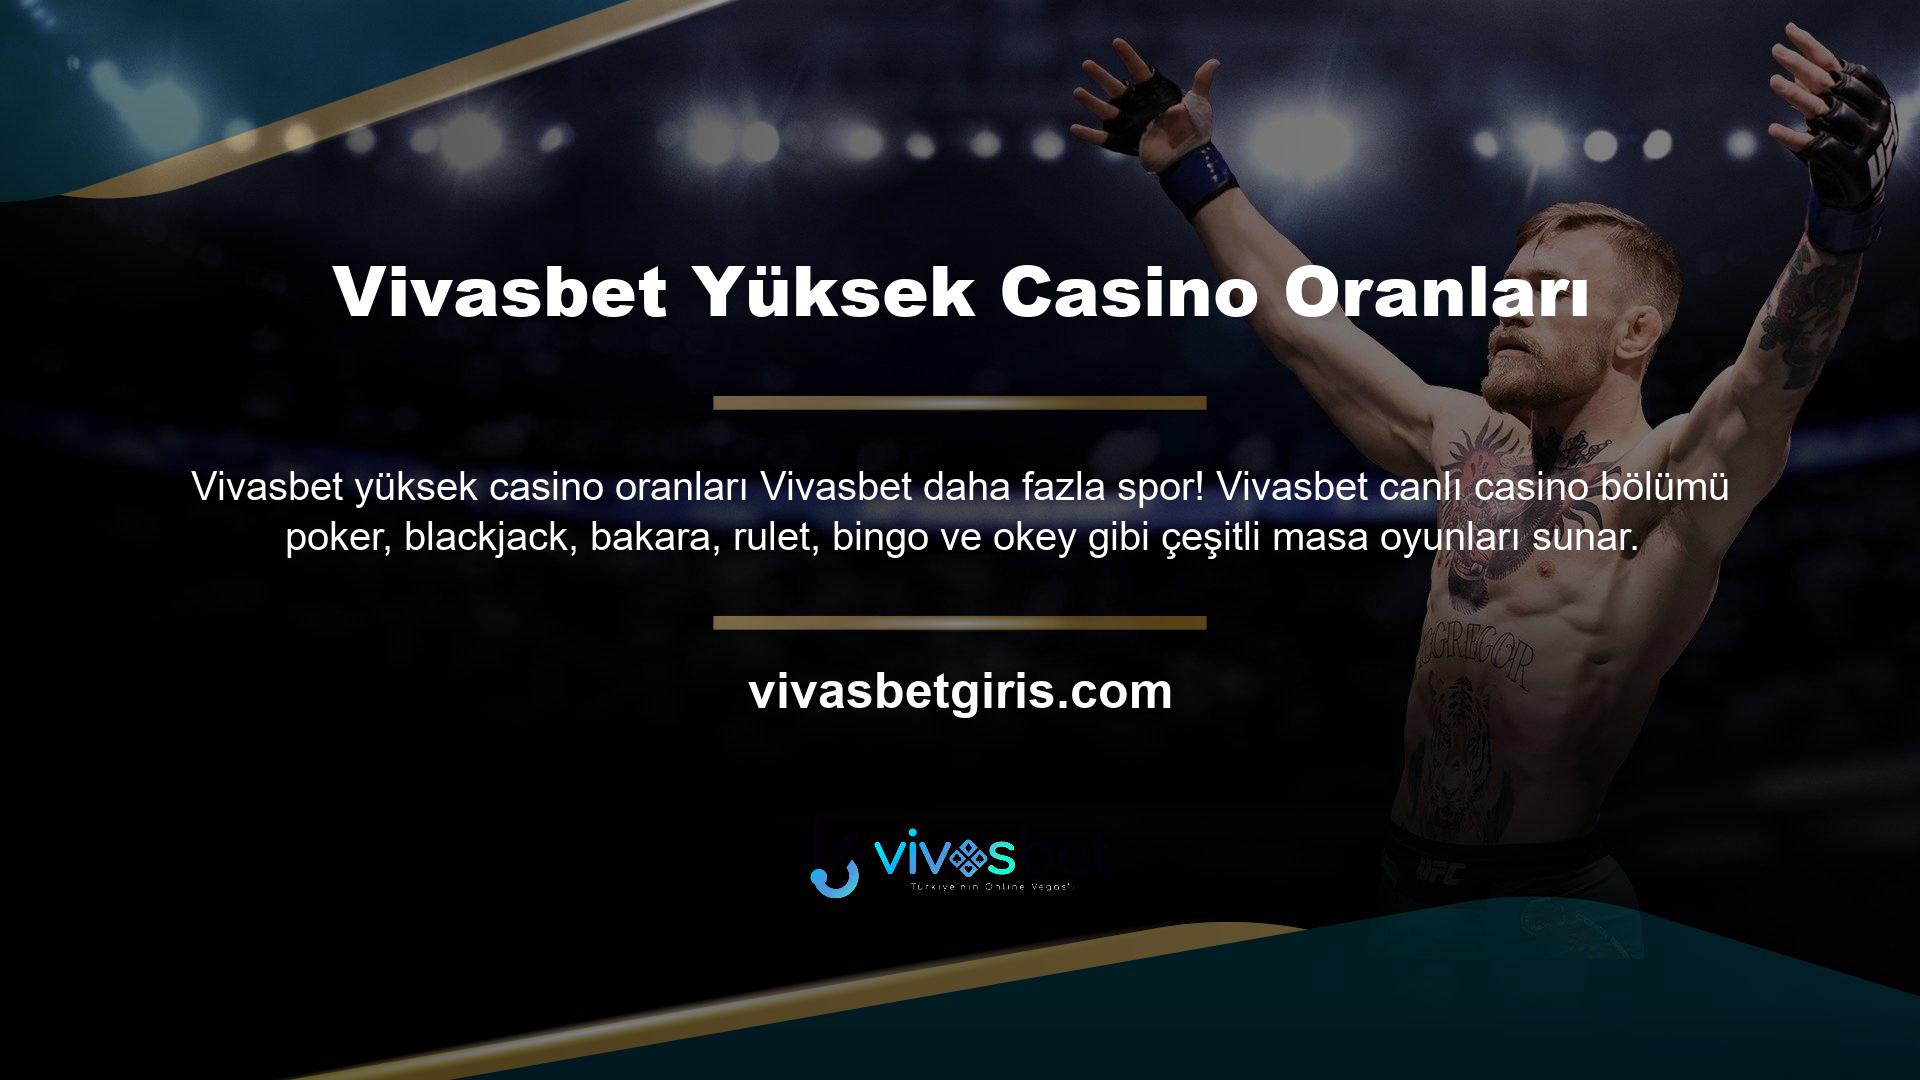 Vivasbet, bonus oyunların yanı sıra canlı bahis ve casino oyun sitesi de sunmaktadır